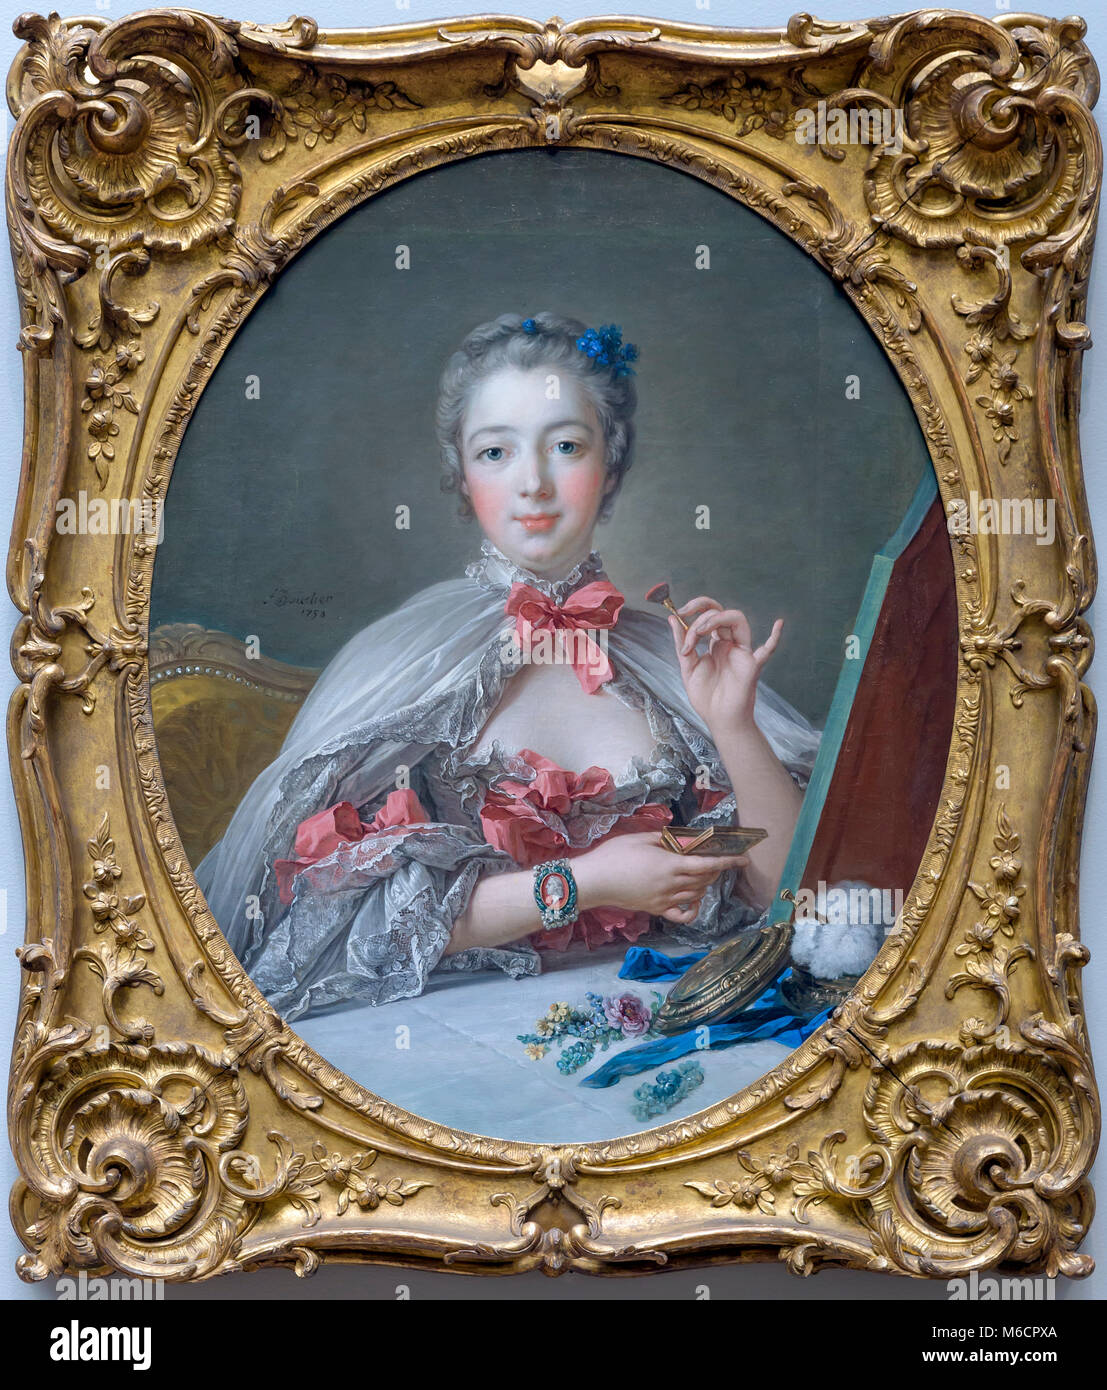 Jean Antoinette Poisson, Marquise de Pompadour, François Boucher, 1750, Musée d'Art de Harvard, Fogg Musées, Cambridge, Massachusetts, USA, Amérique du Nord Banque D'Images